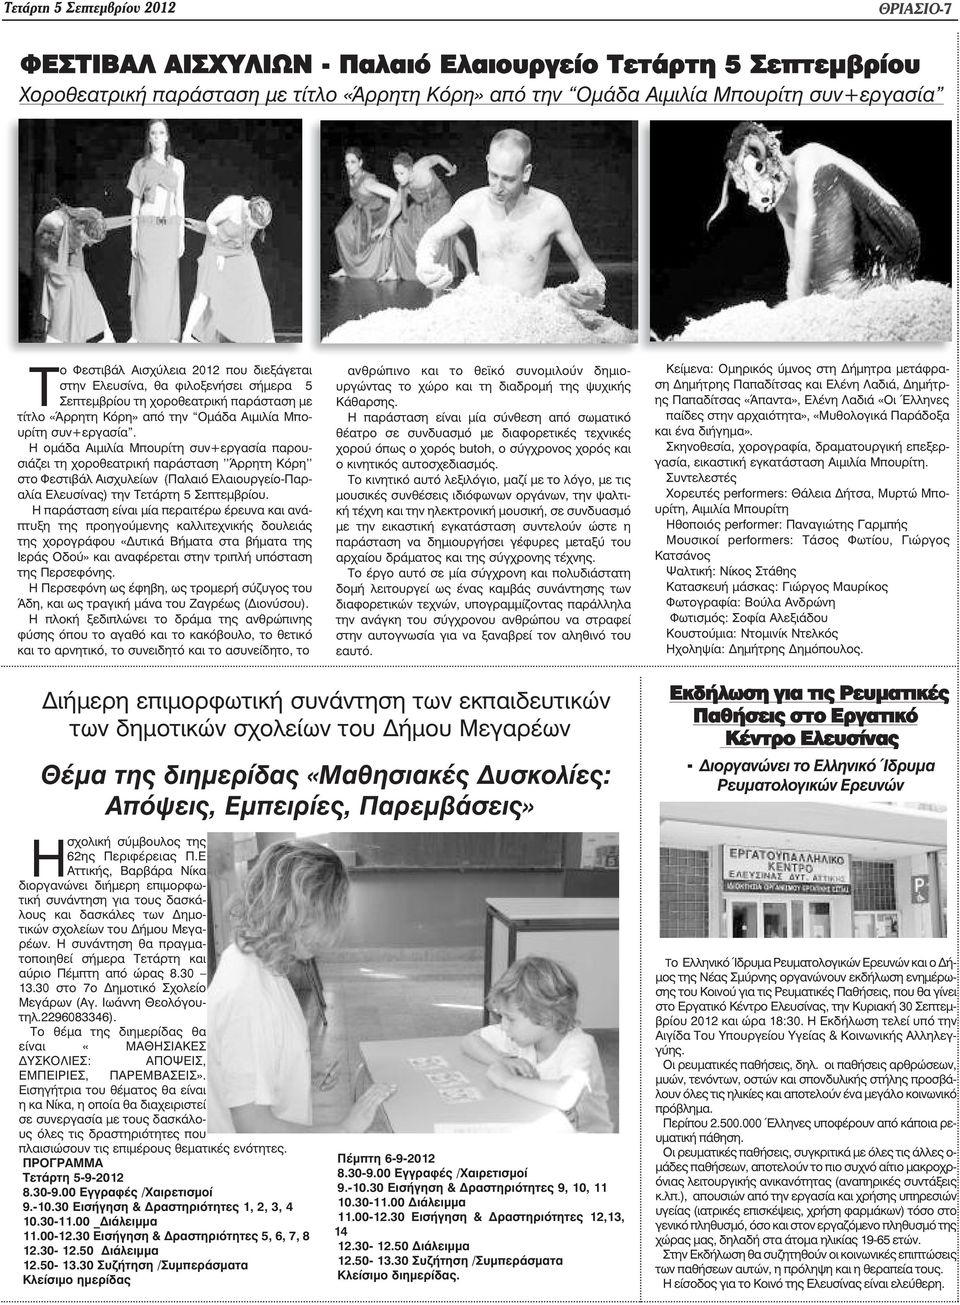 Η οµάδα Αιµιλία Μπουρίτη συν+εργασία παρουσιάζει τη χοροθεατρική παράσταση ''Άρρητη Κόρη'' στο Φεστιβάλ Αισχυλείων (Παλαιό Ελαιουργείο-Παραλία Ελευσίνας) την Τετάρτη 5 Σεπτεµβρίου.